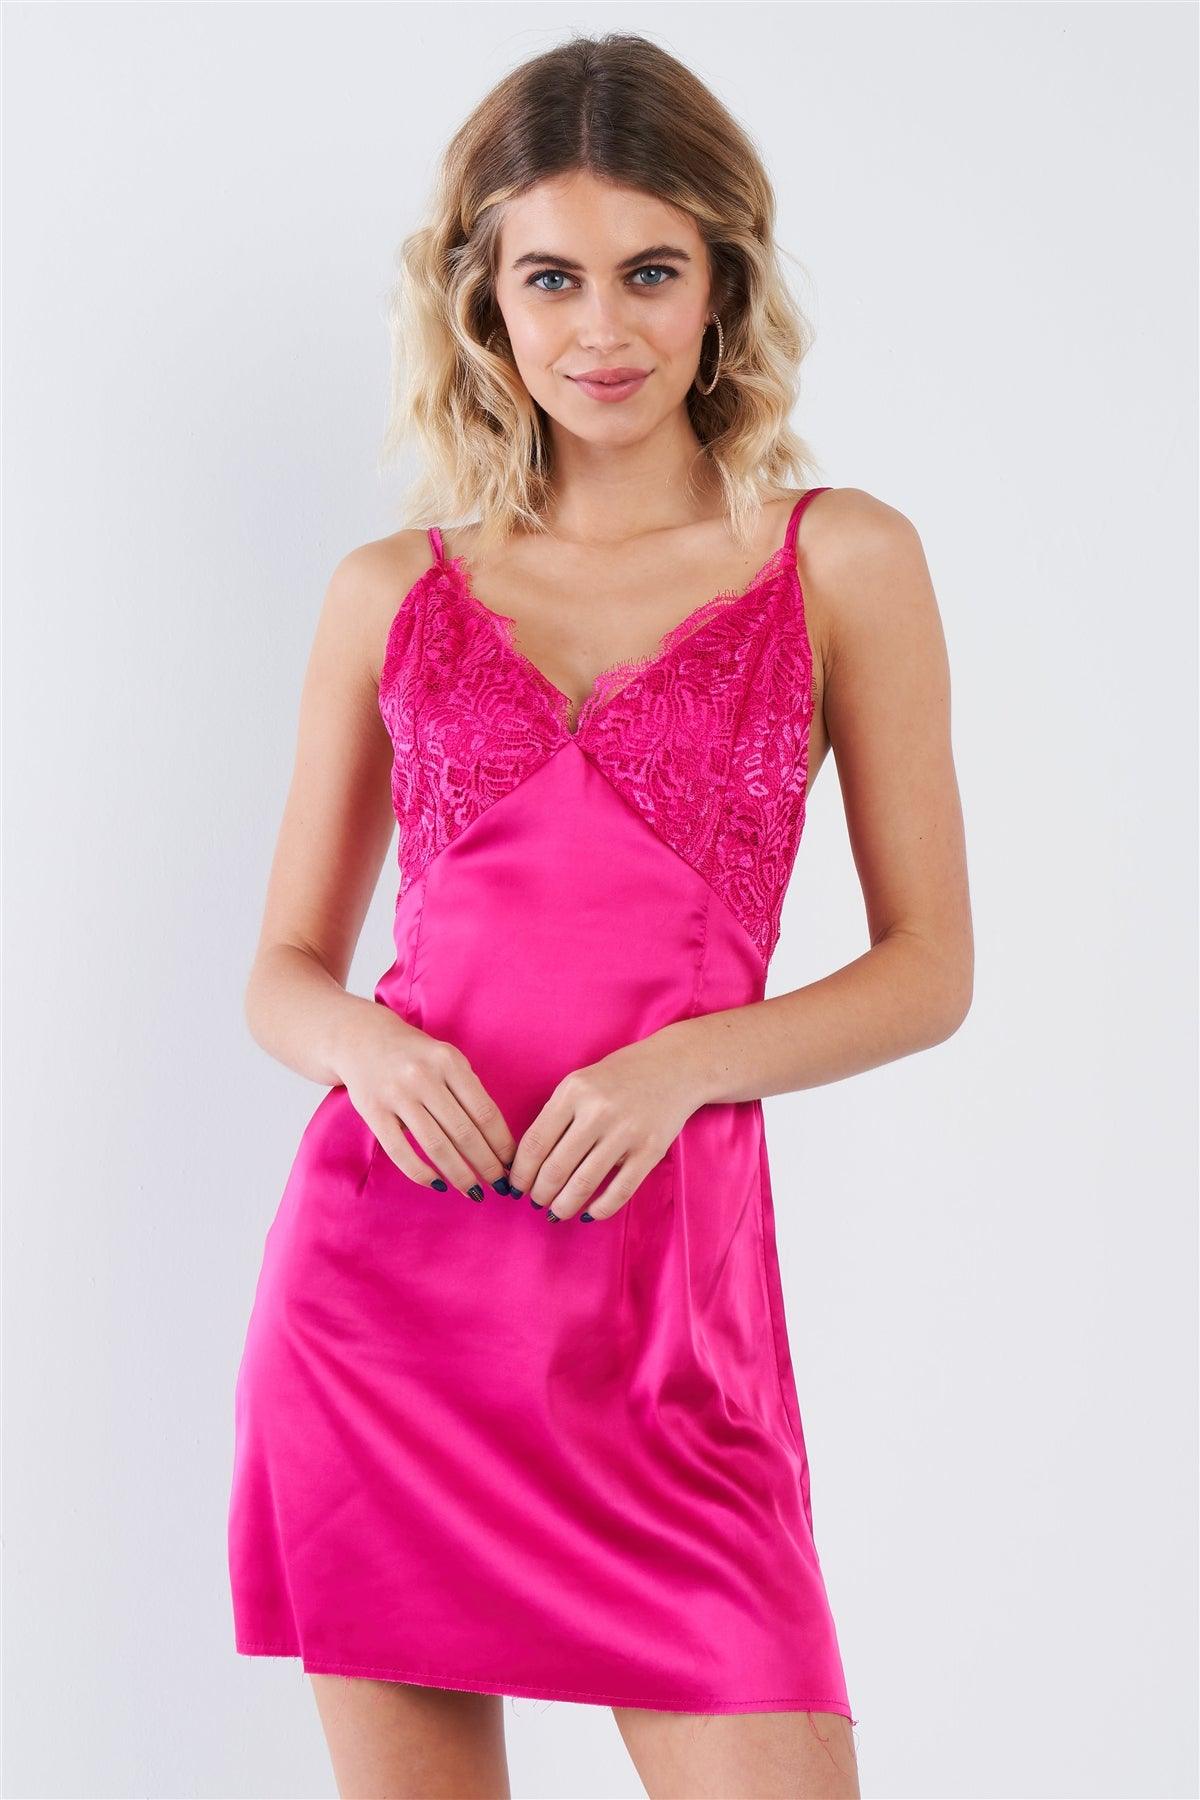 Hot Pink Silk Leave Trim Raw Hem Criss-Cross Back Mini Chic Dress   /3-2-1